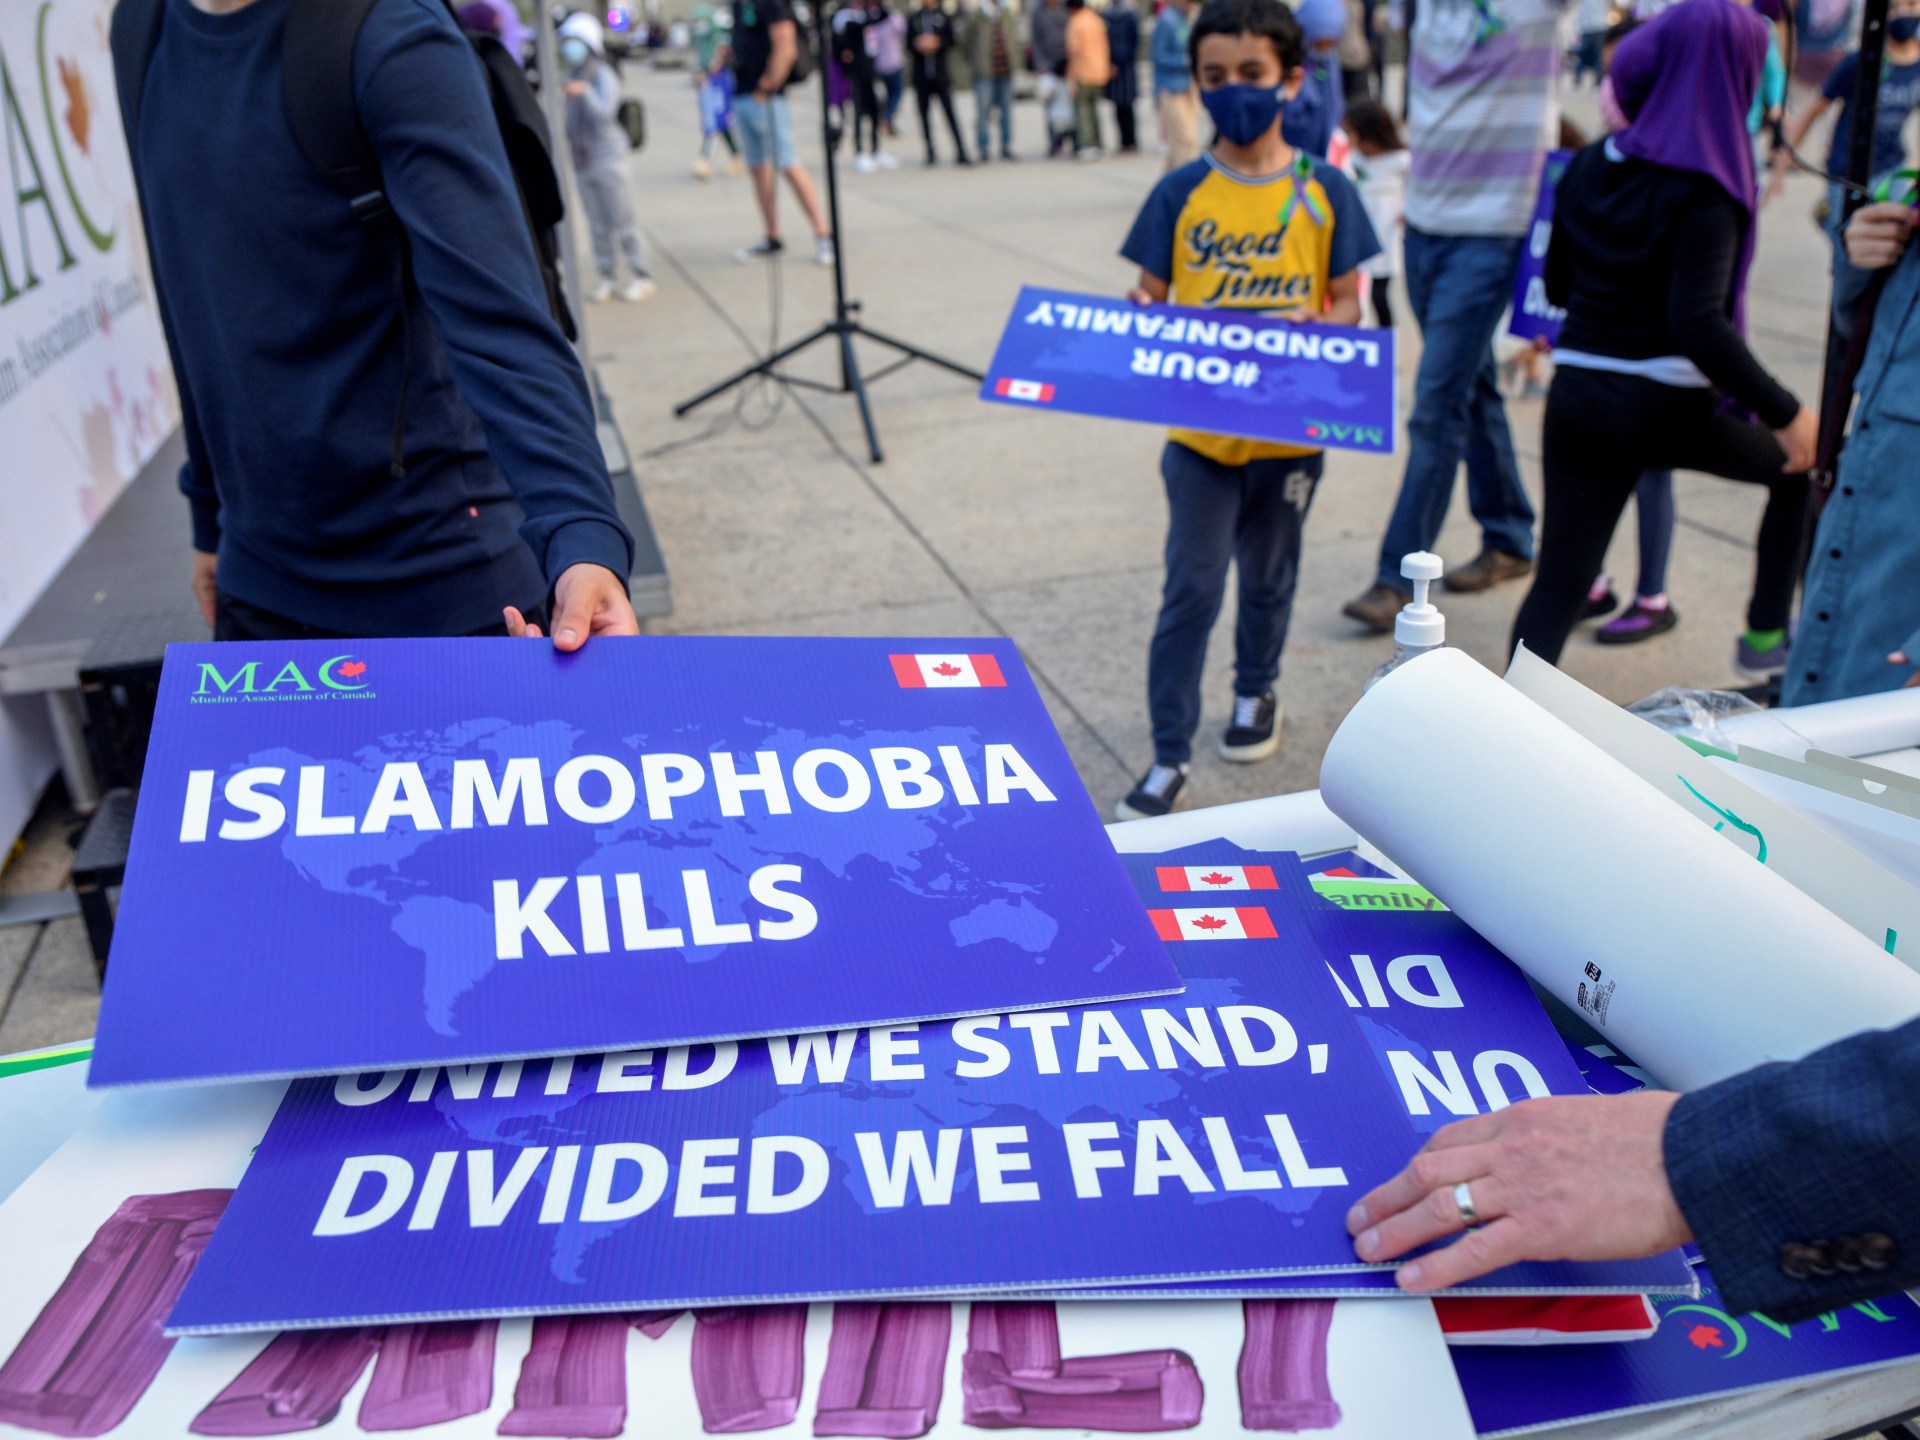 T&J: Perwakilan anti-Islamofobia Kanada bersumpah untuk melawan kebencian |  Berita Islamofobia